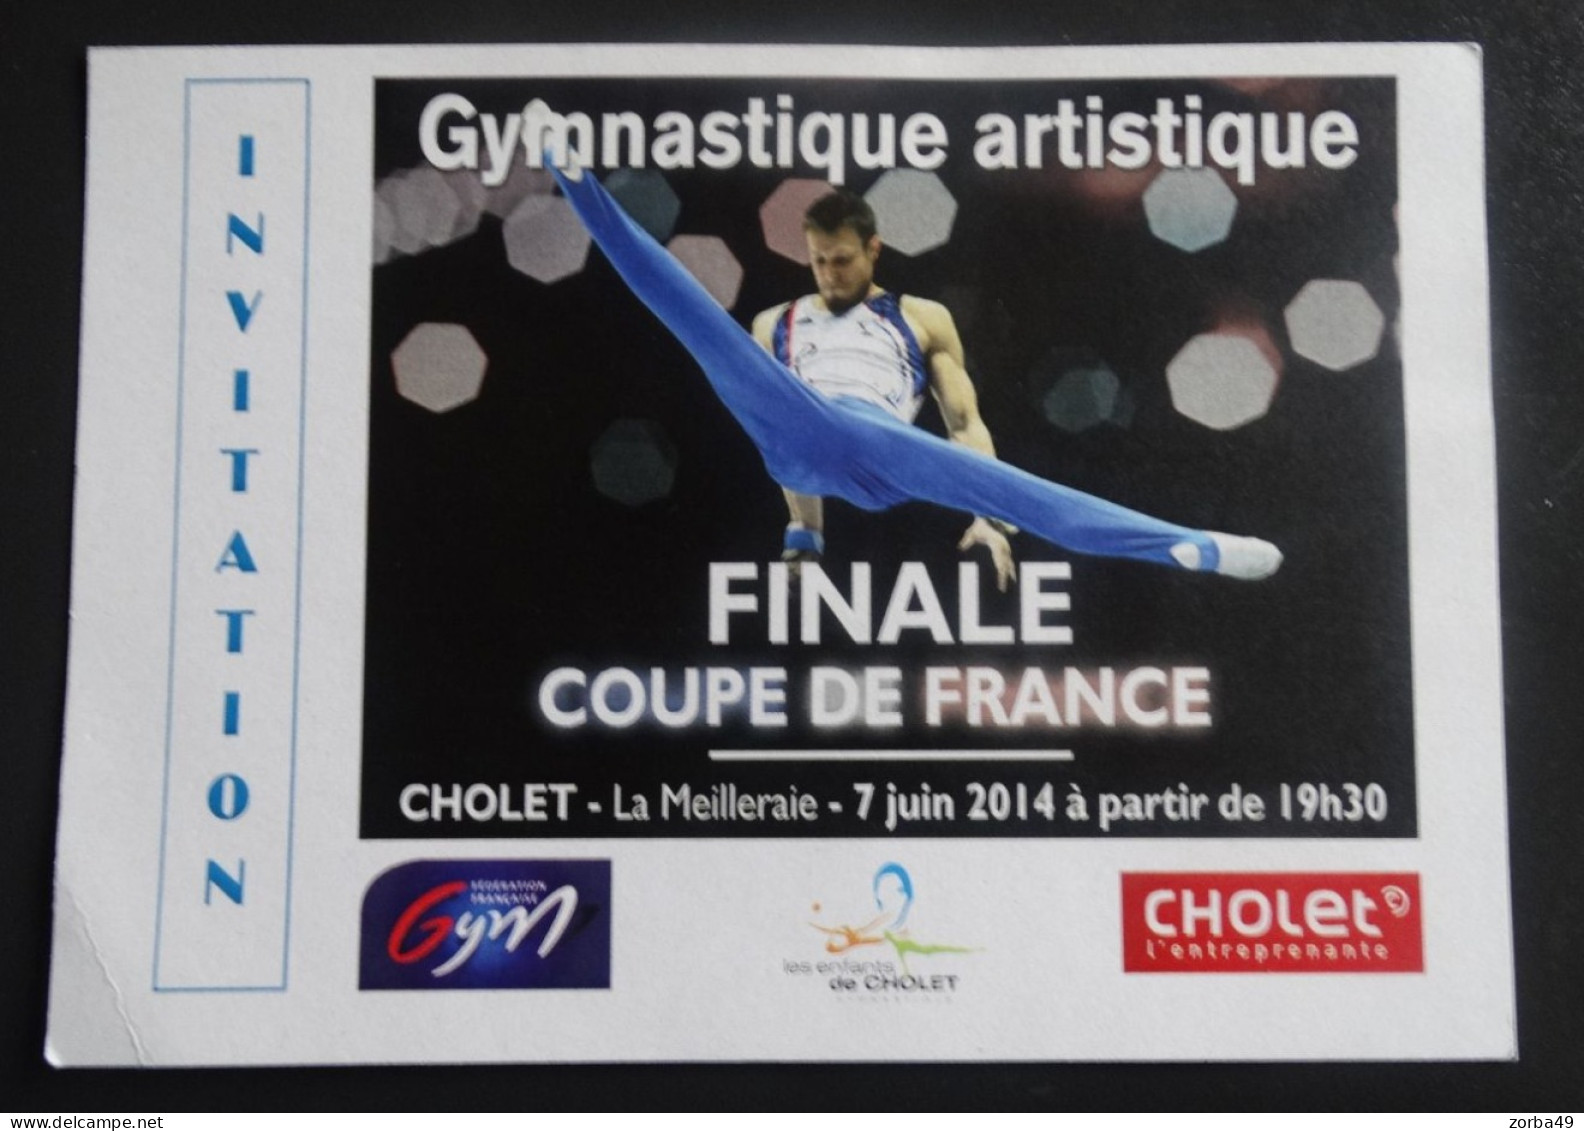 CHOLET Invitation Finale Coupe De France De Gymnastique Artistique 2014 - Gymnastics